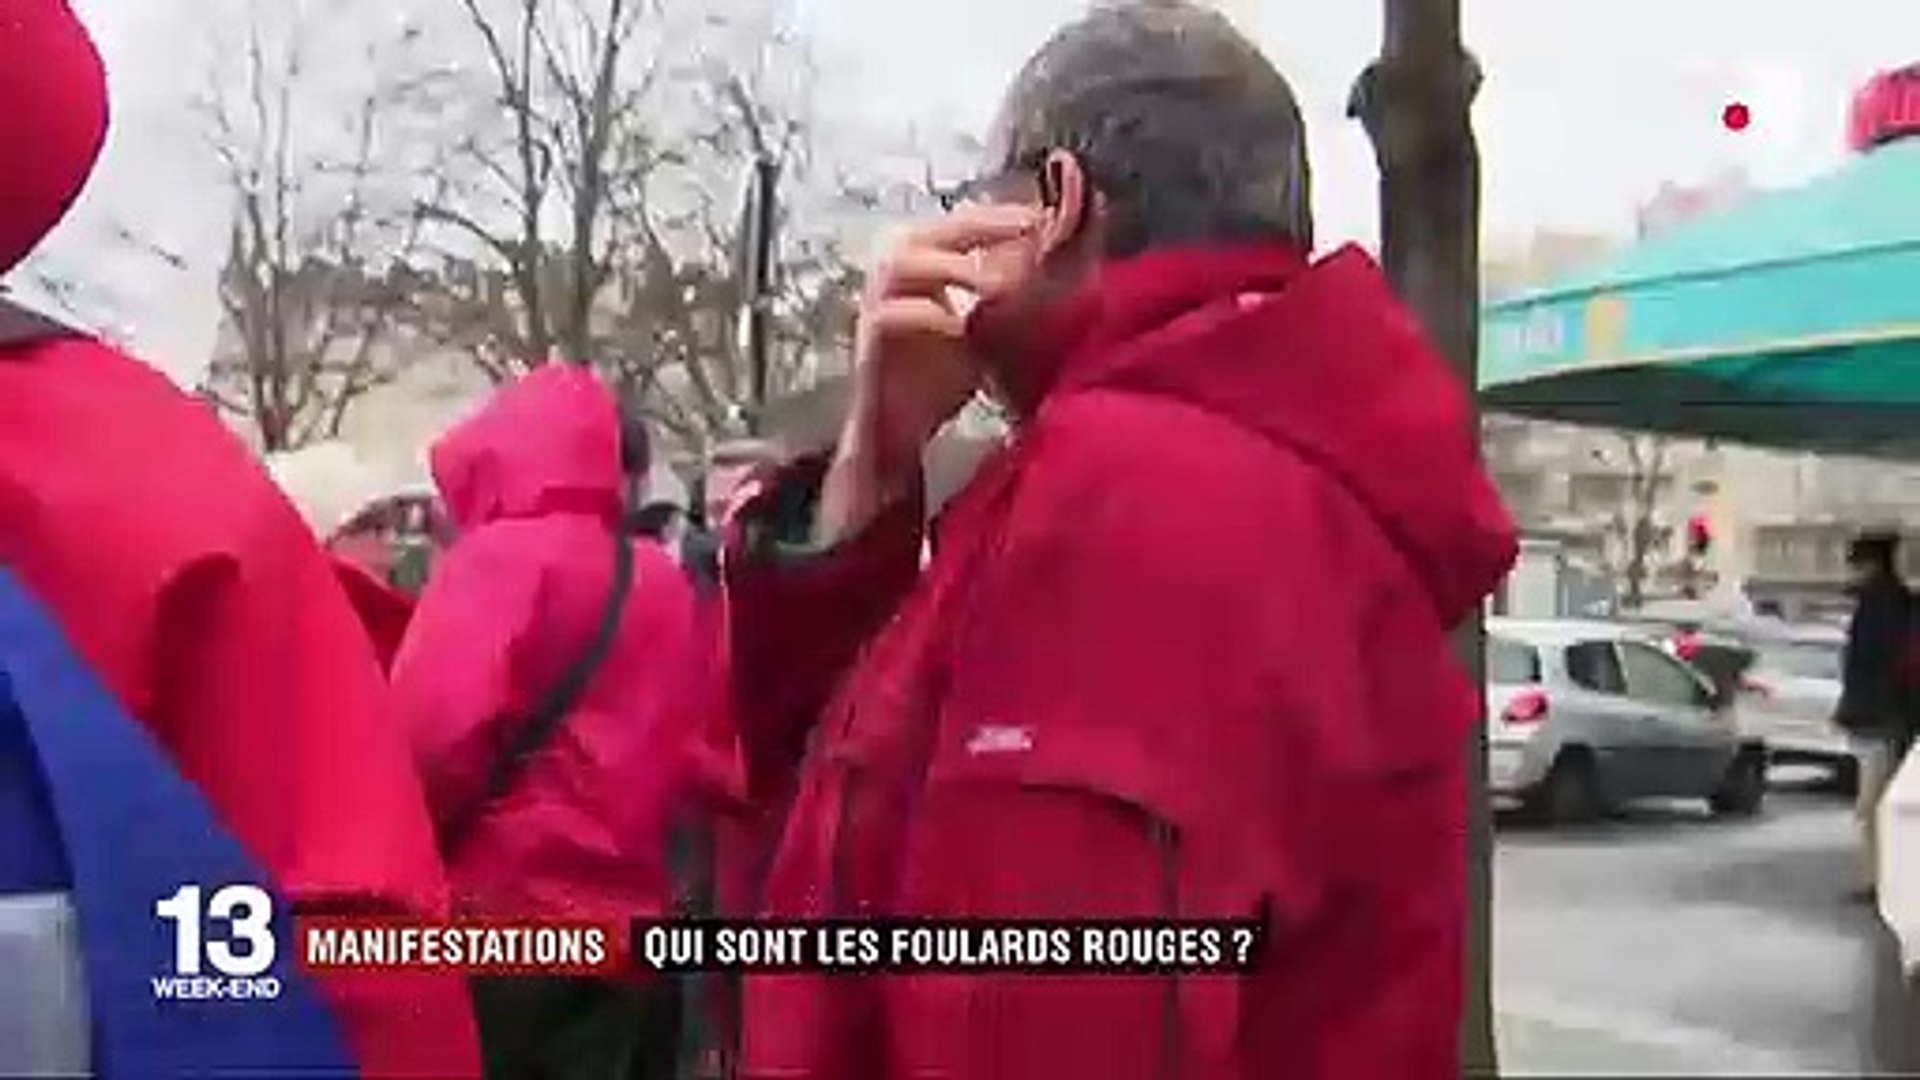 Manifestation des "foulard rouges" : qui sont-ils ? - Vidéo Dailymotion